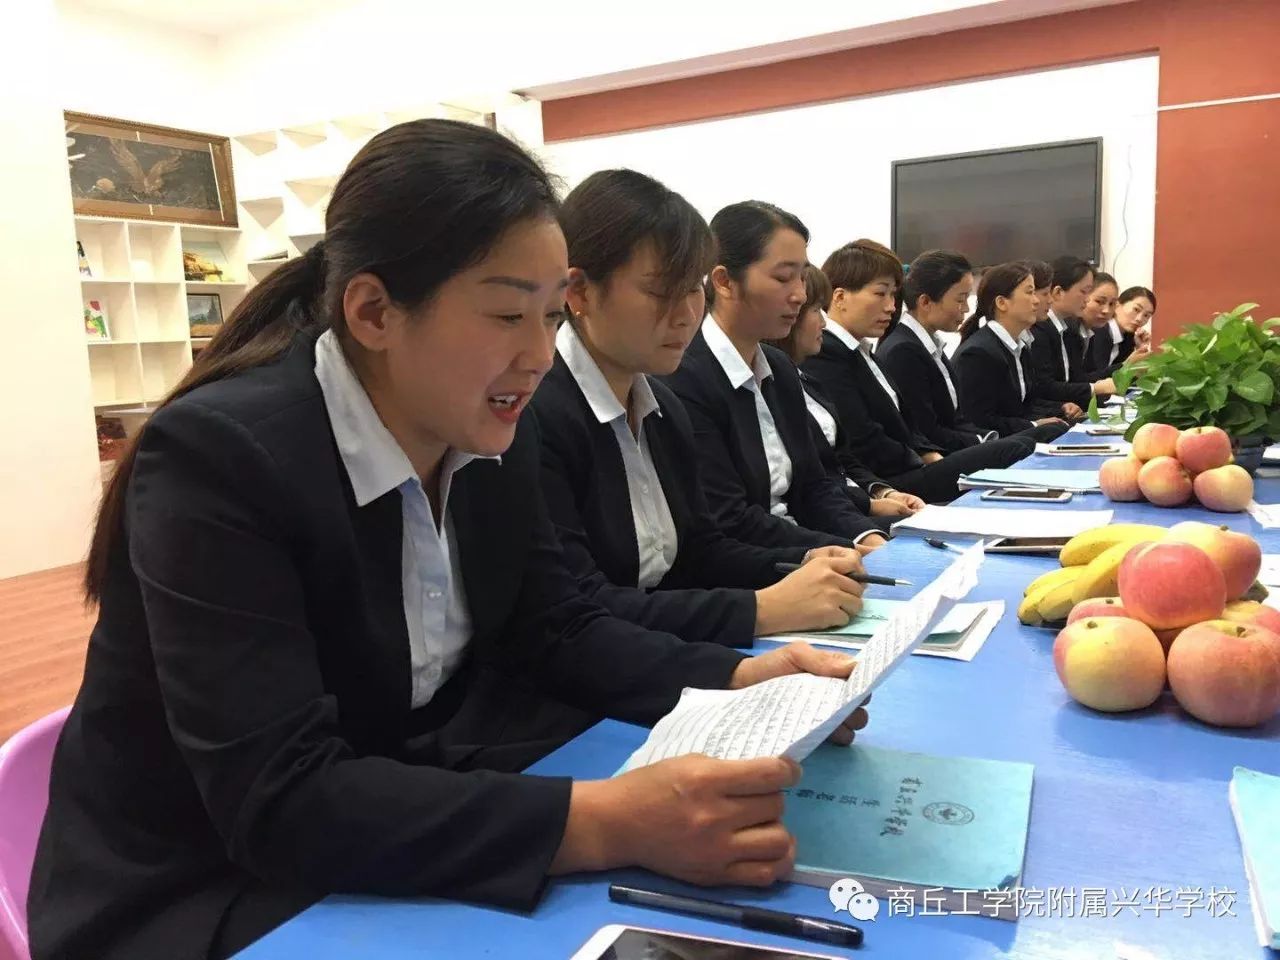 为了提升生活老师的管理水平,商丘工学院附属兴华学校生活部于10月17